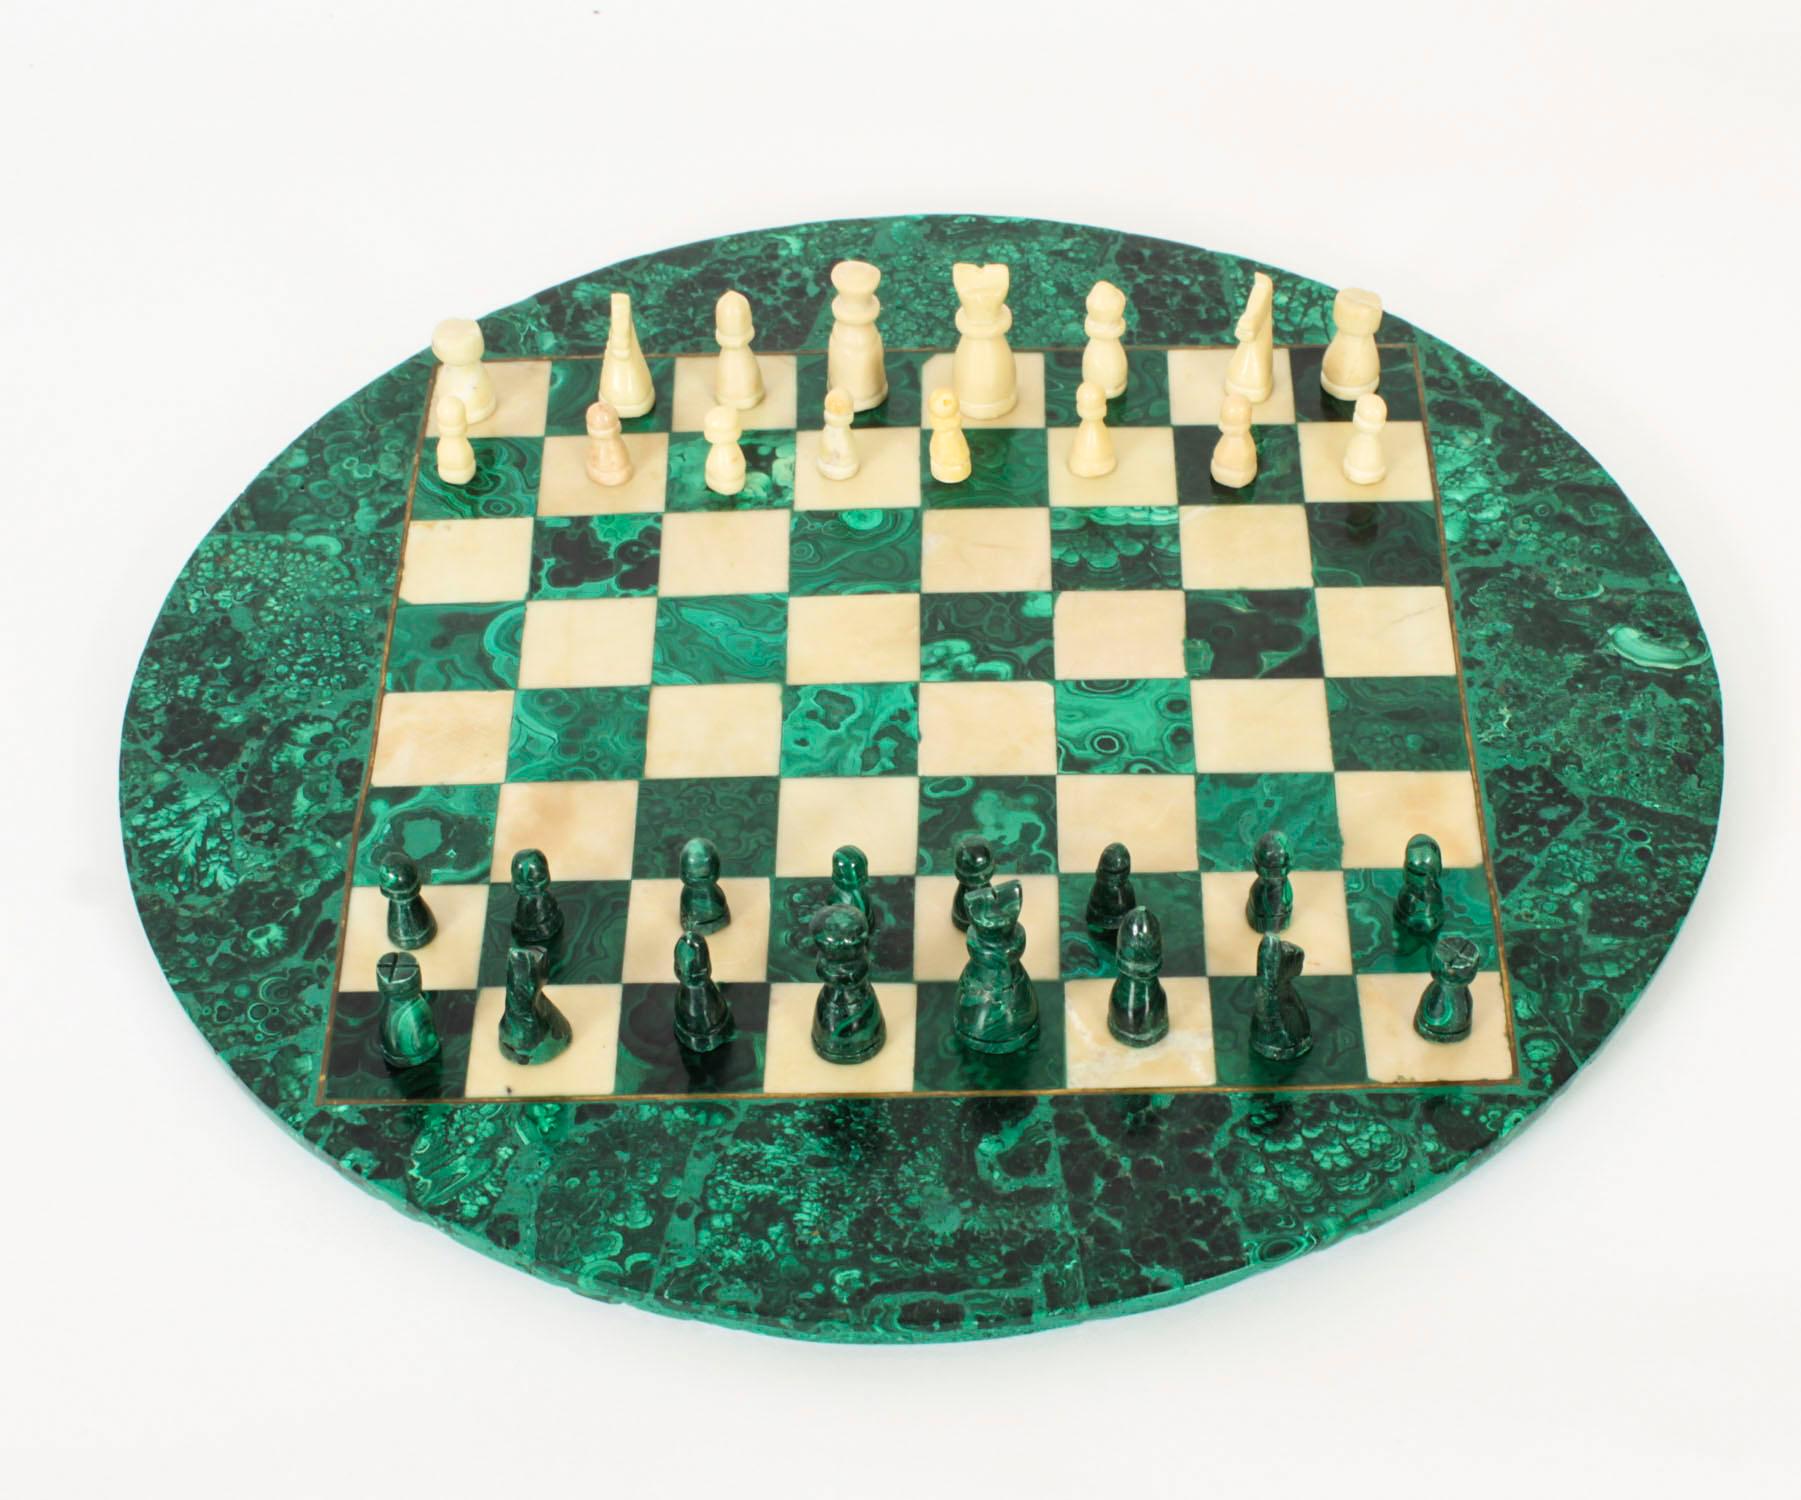 Voici un magnifique jeu d'échecs italien ancien en malachite et marbre de Carrare datant d'environ 1920.

L'échiquier en malachite est de forme circulaire et est entouré d'un cordon en laiton incrusté. Il est accompagné de pièces d'échecs en